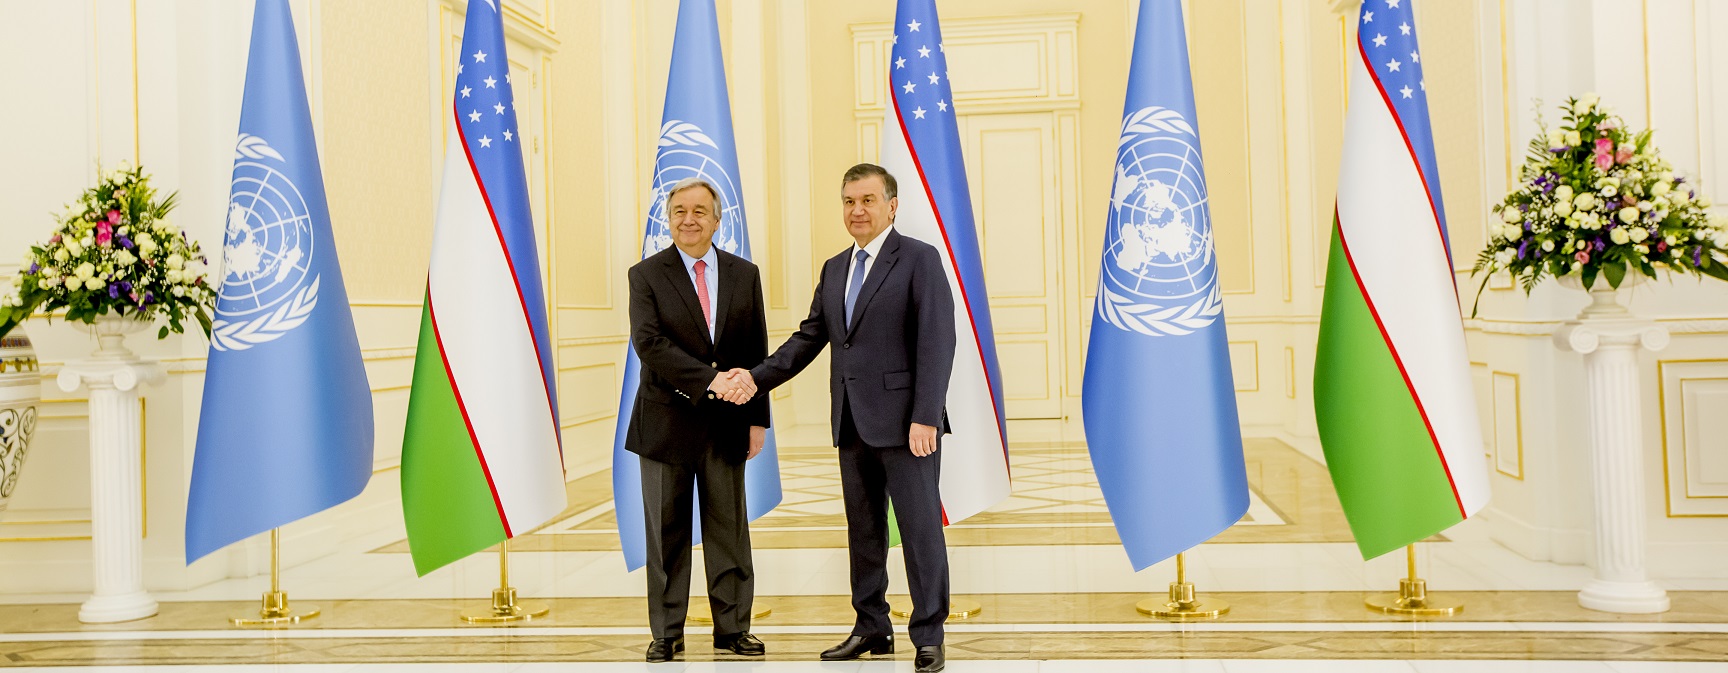 Генеральный секретарь ООН Антониу Гутерриш впервые посетил Узбекистан